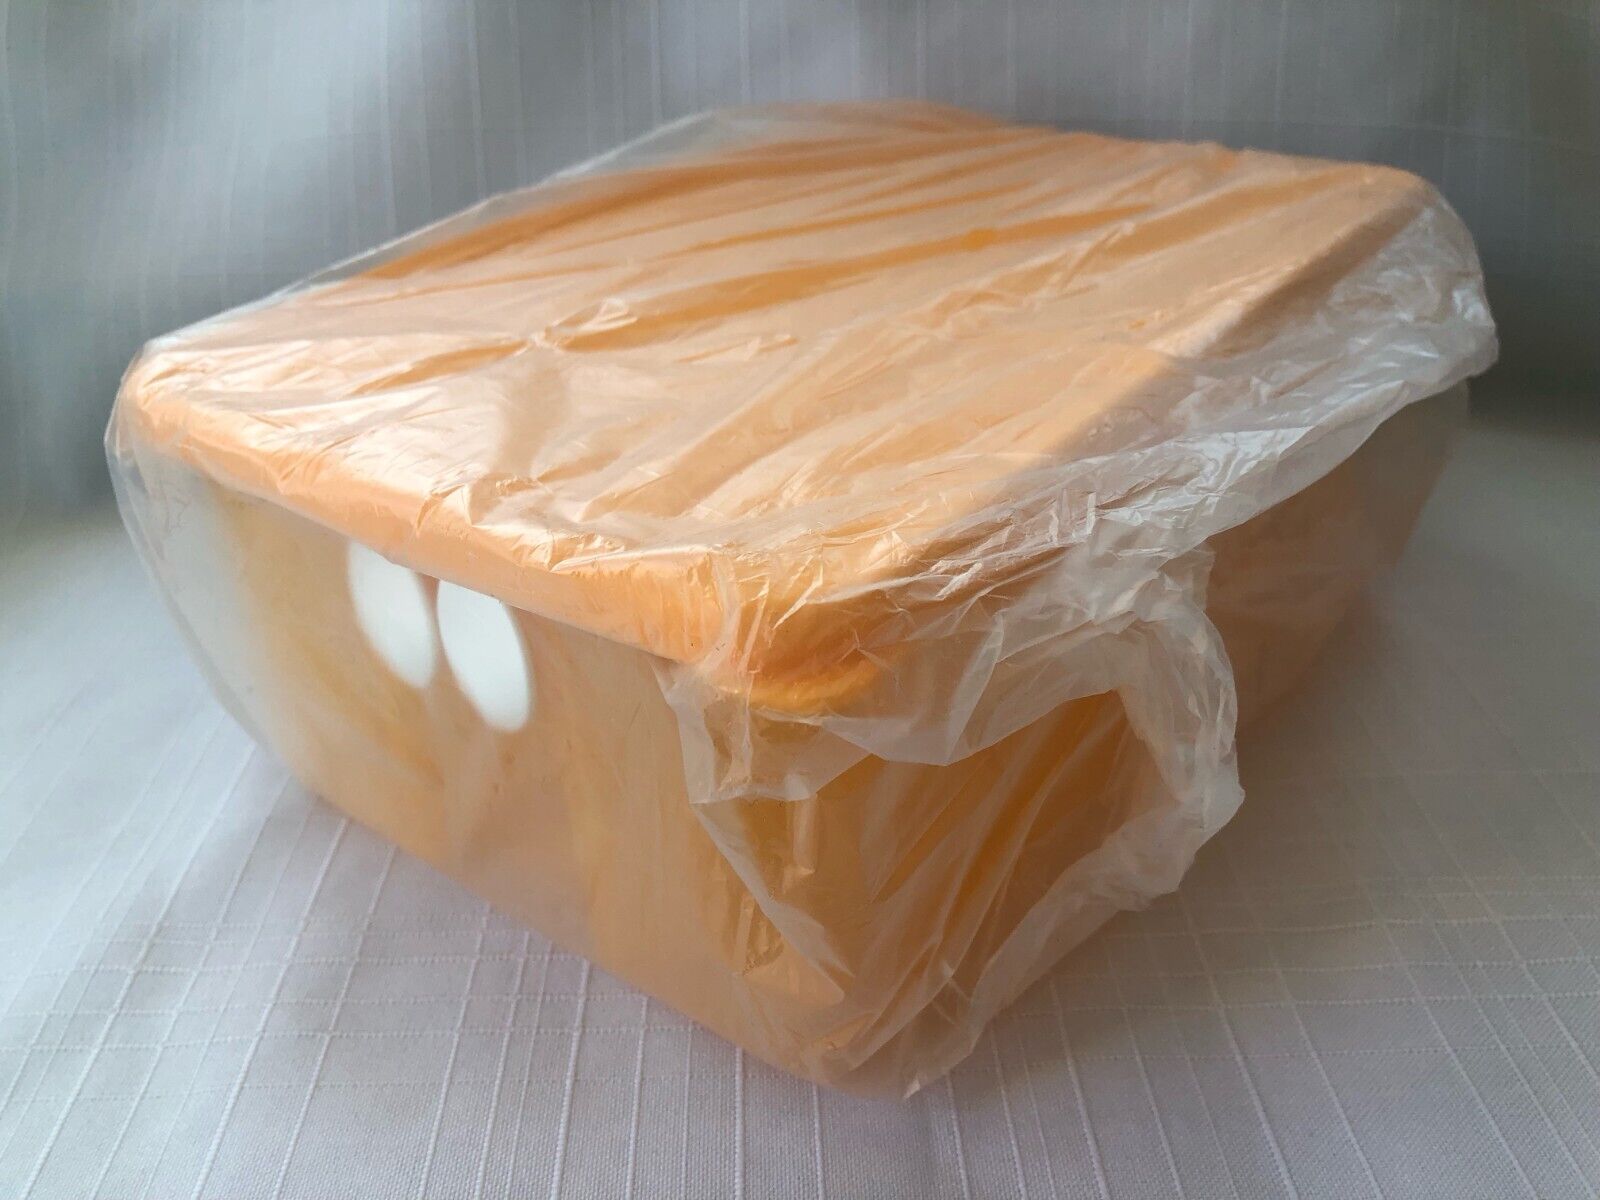 NEW - TUPPERWARE FridgeSmart Vented Container Orange - Medium Size - EXCELLENT